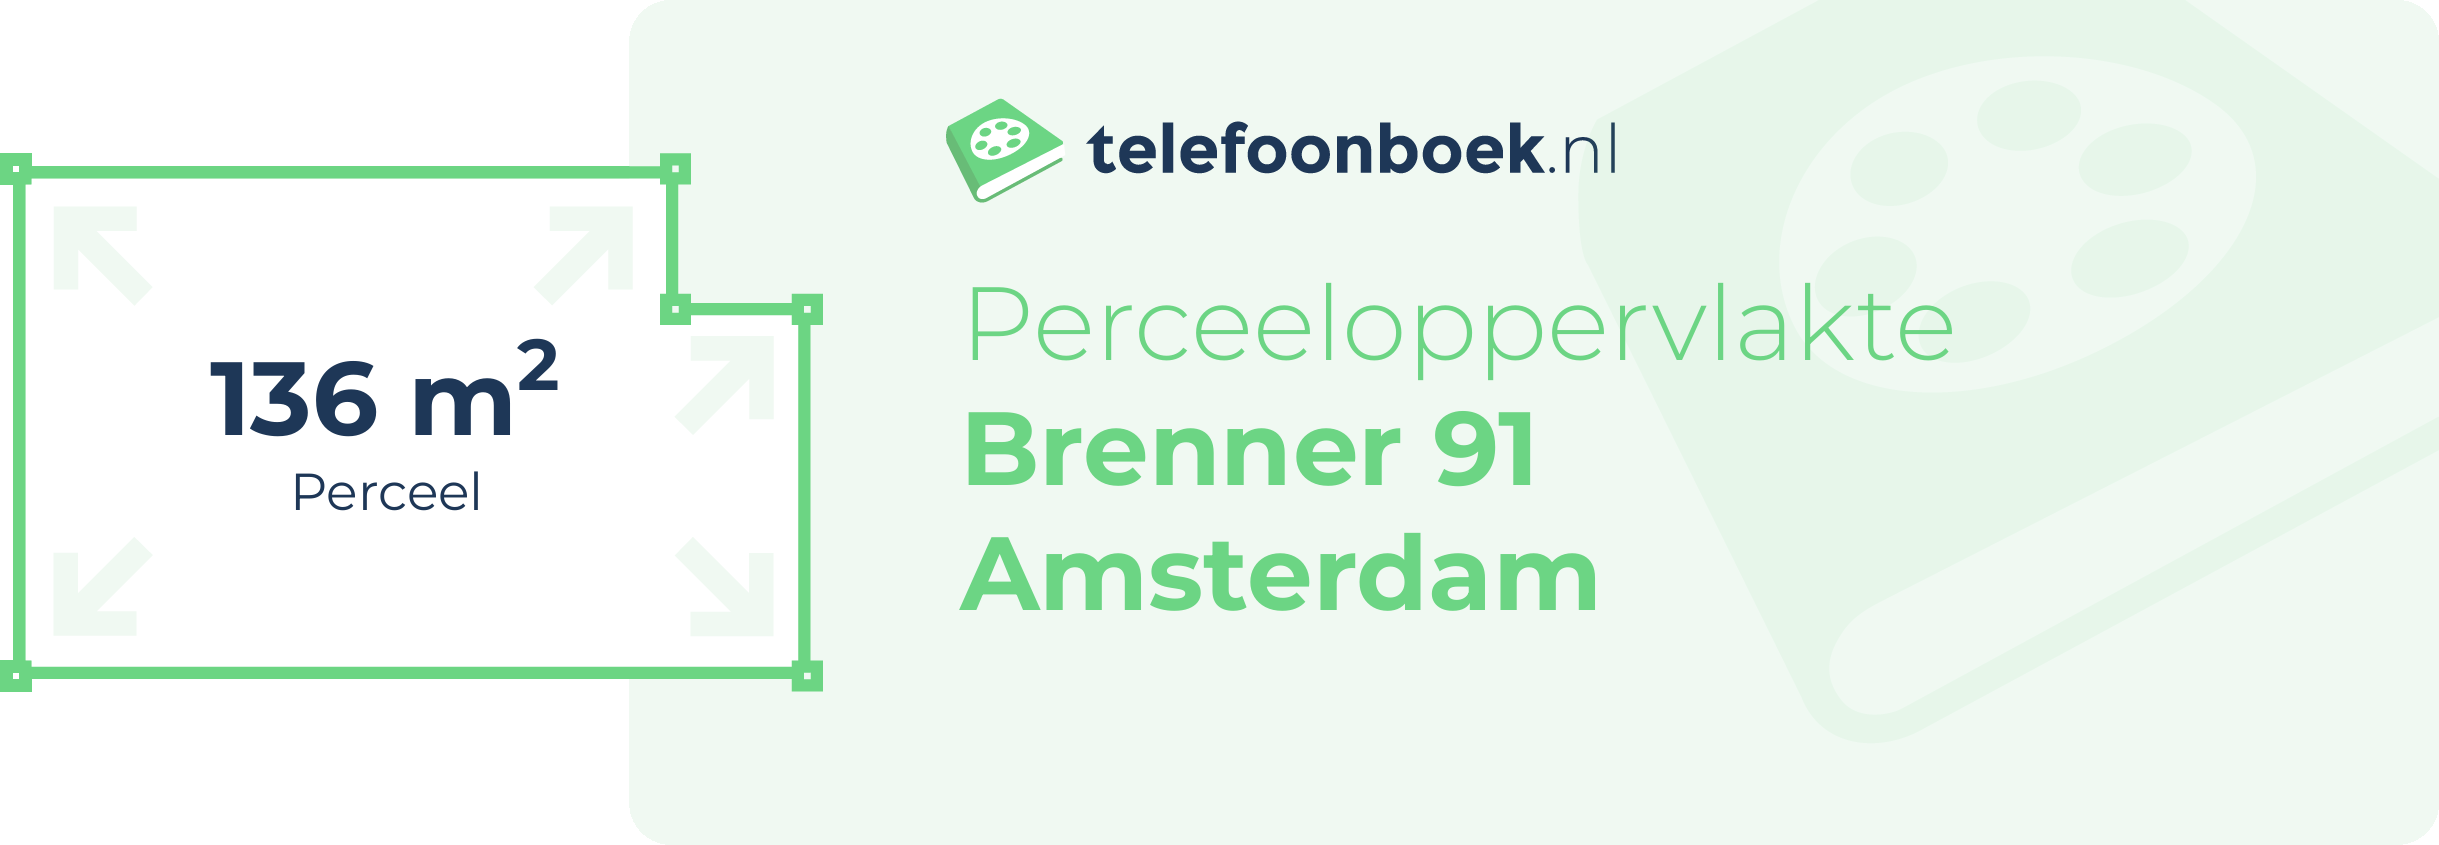 Perceeloppervlakte Brenner 91 Amsterdam